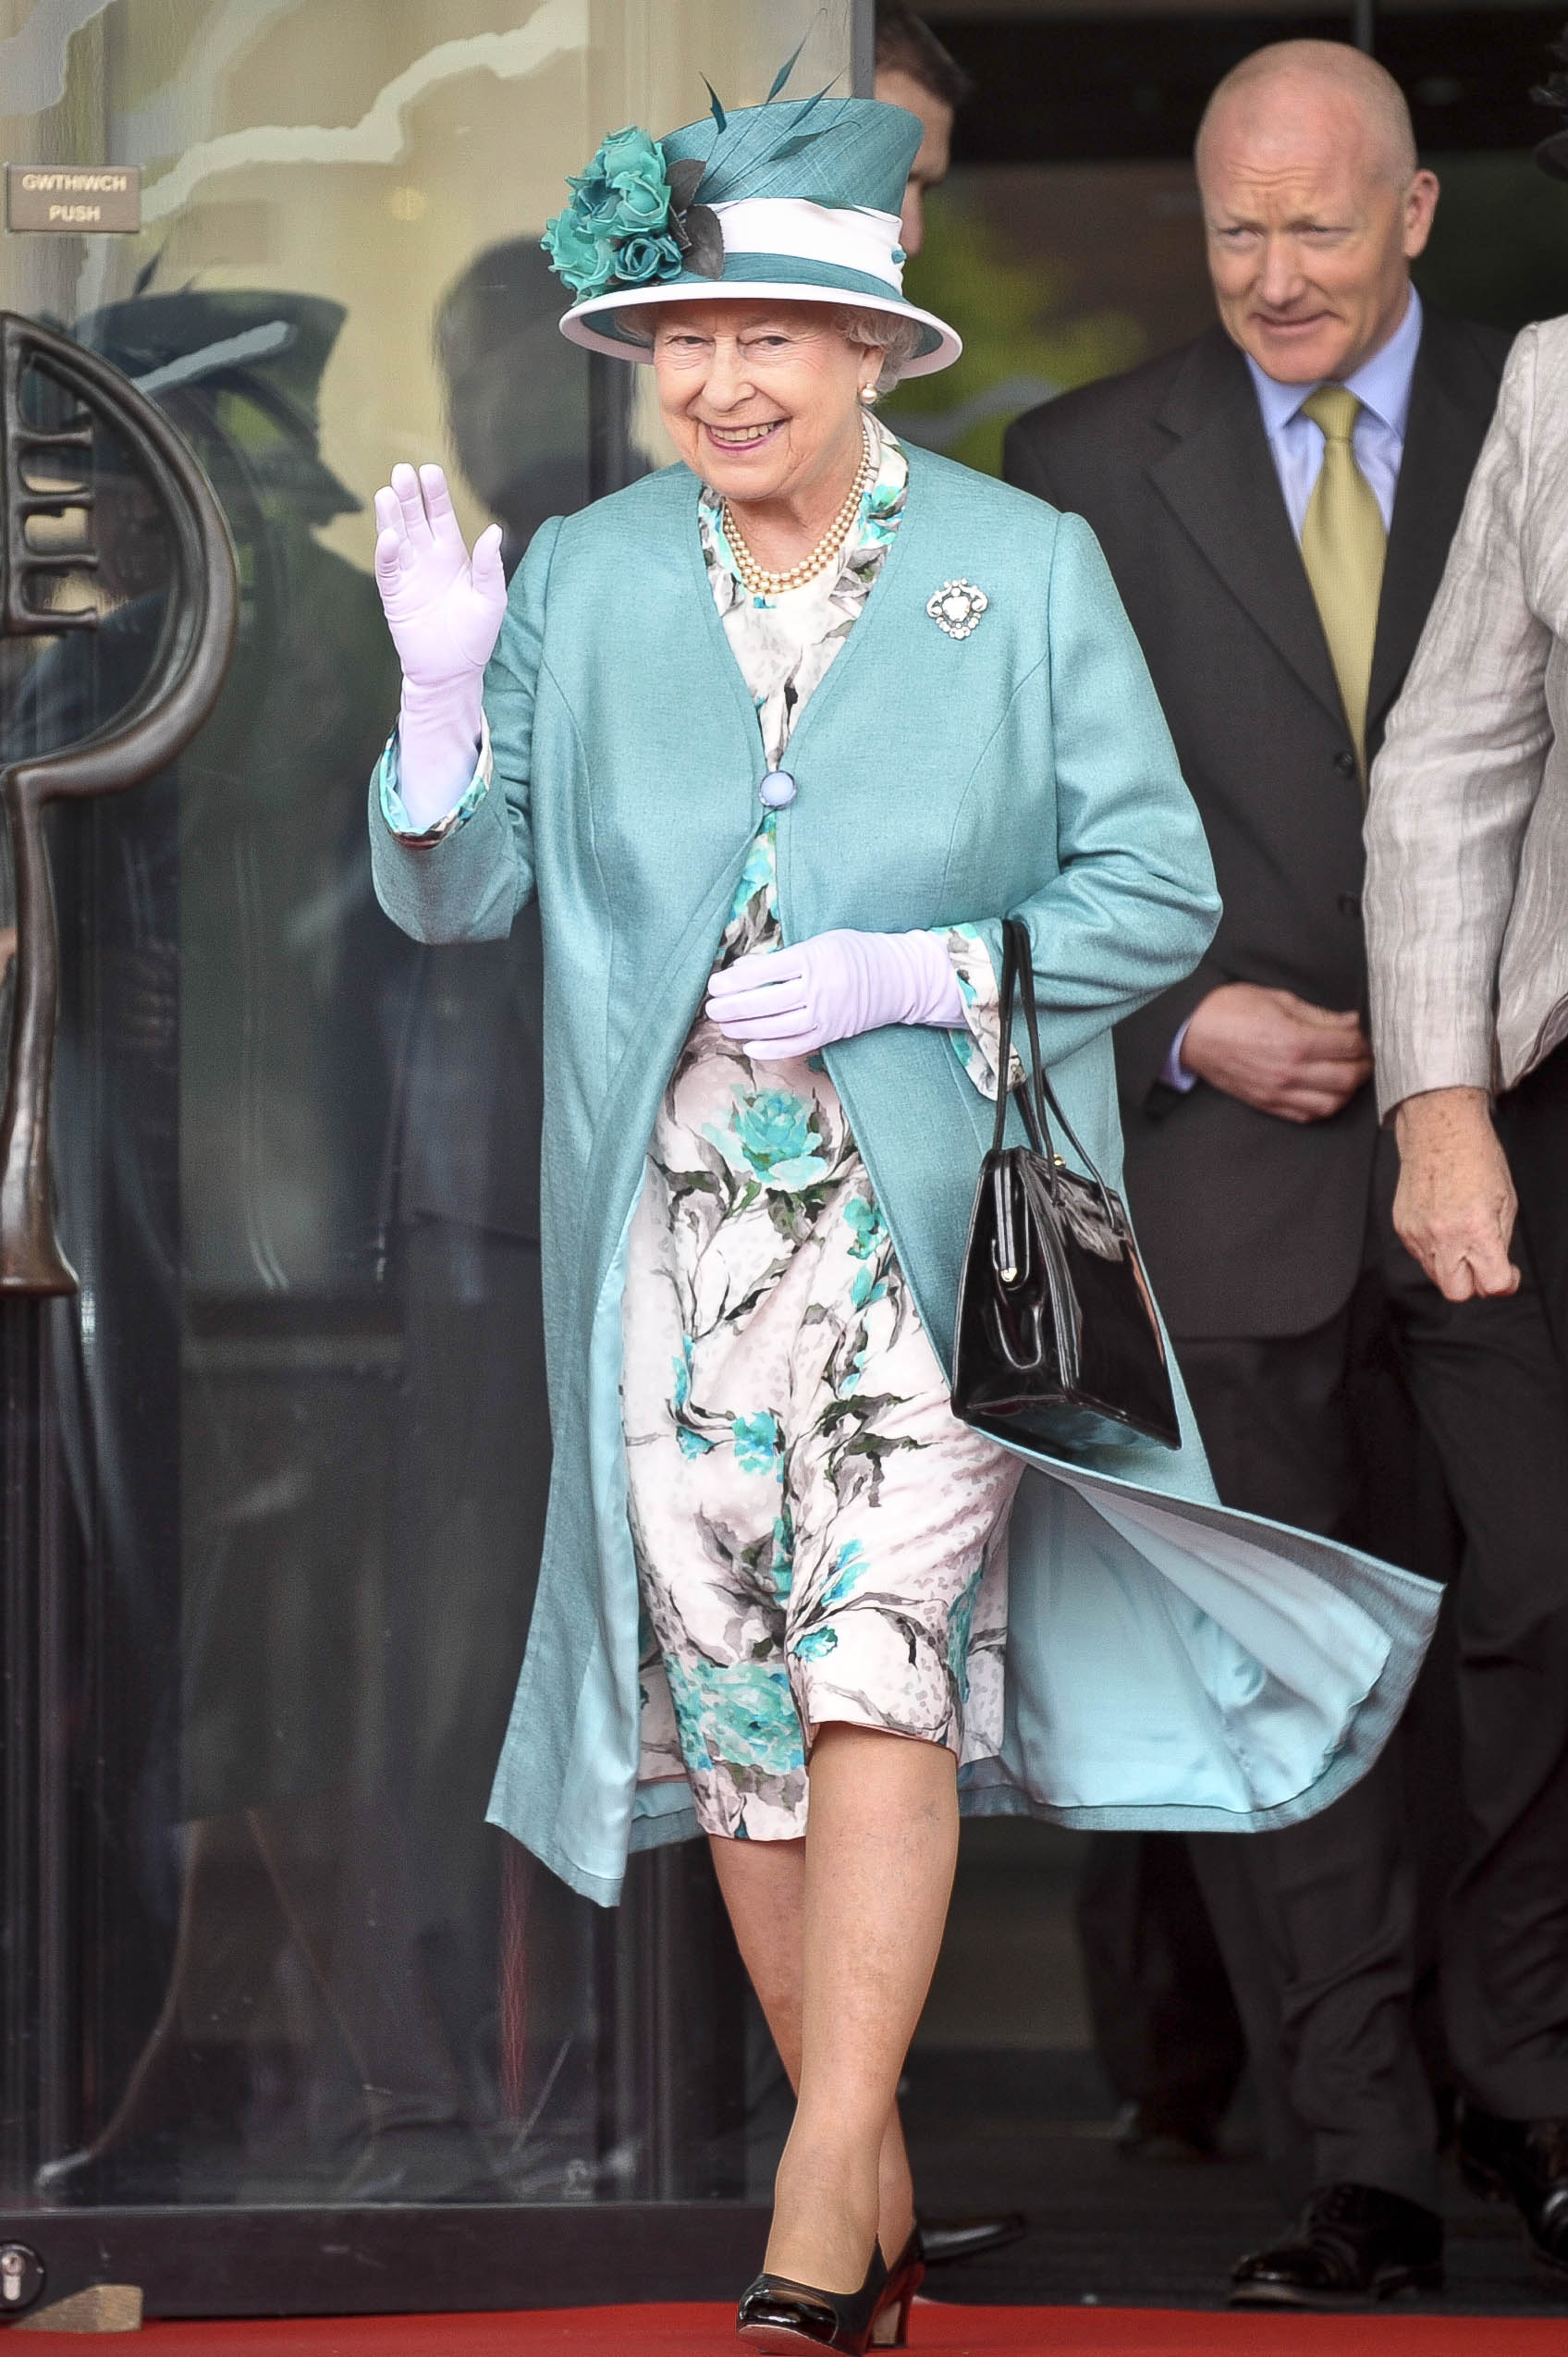 Queen Elizabeth II on June 7, 2011 | Source: Getty Images